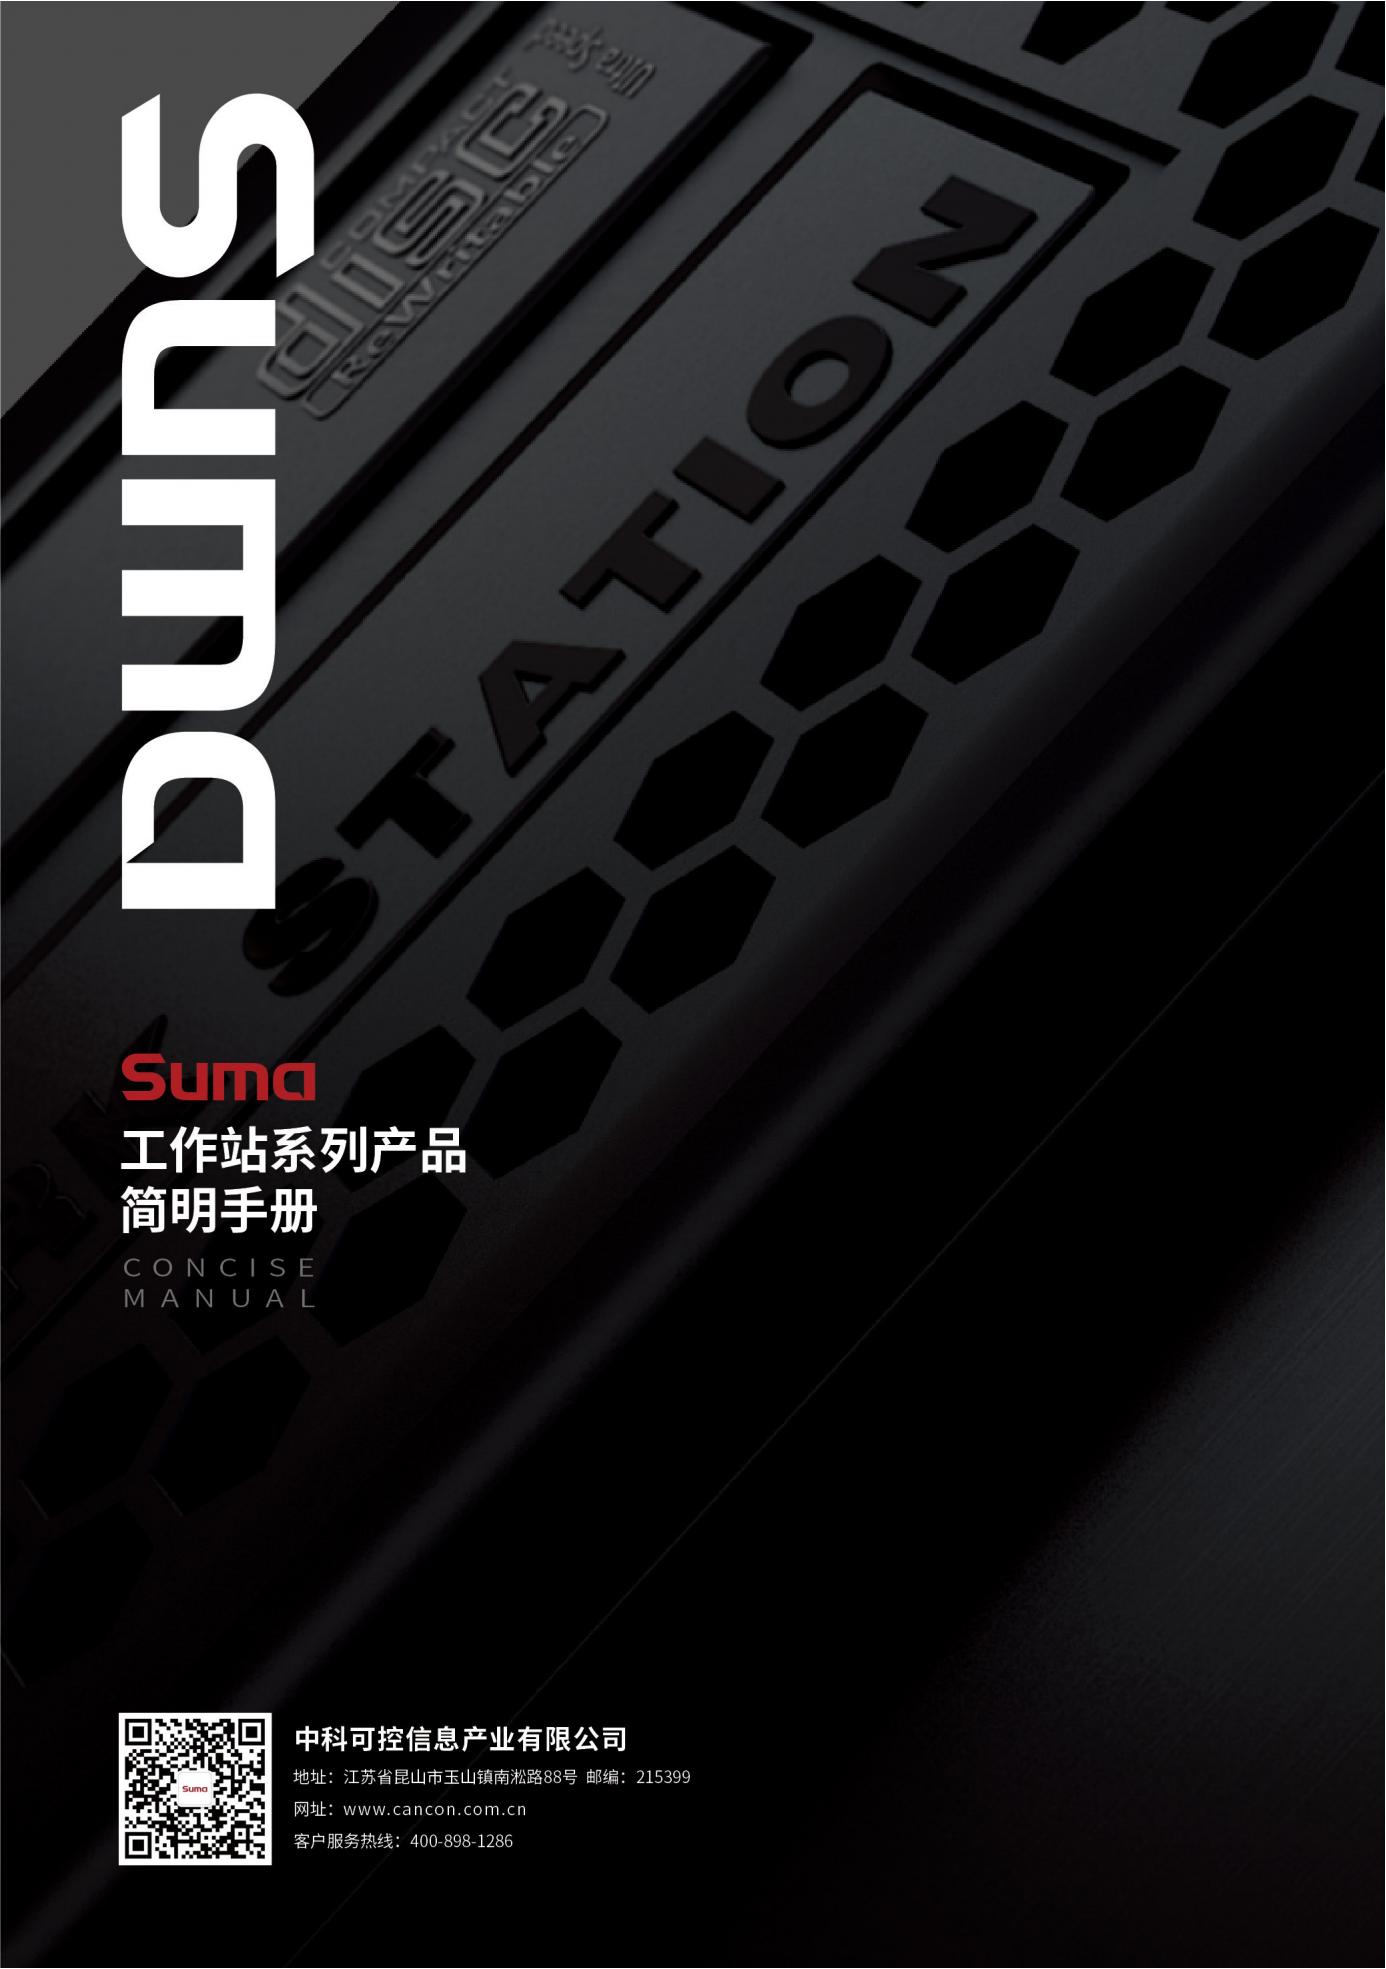 Suma工作站系列产品简明手册四折页_0520_07.jpg